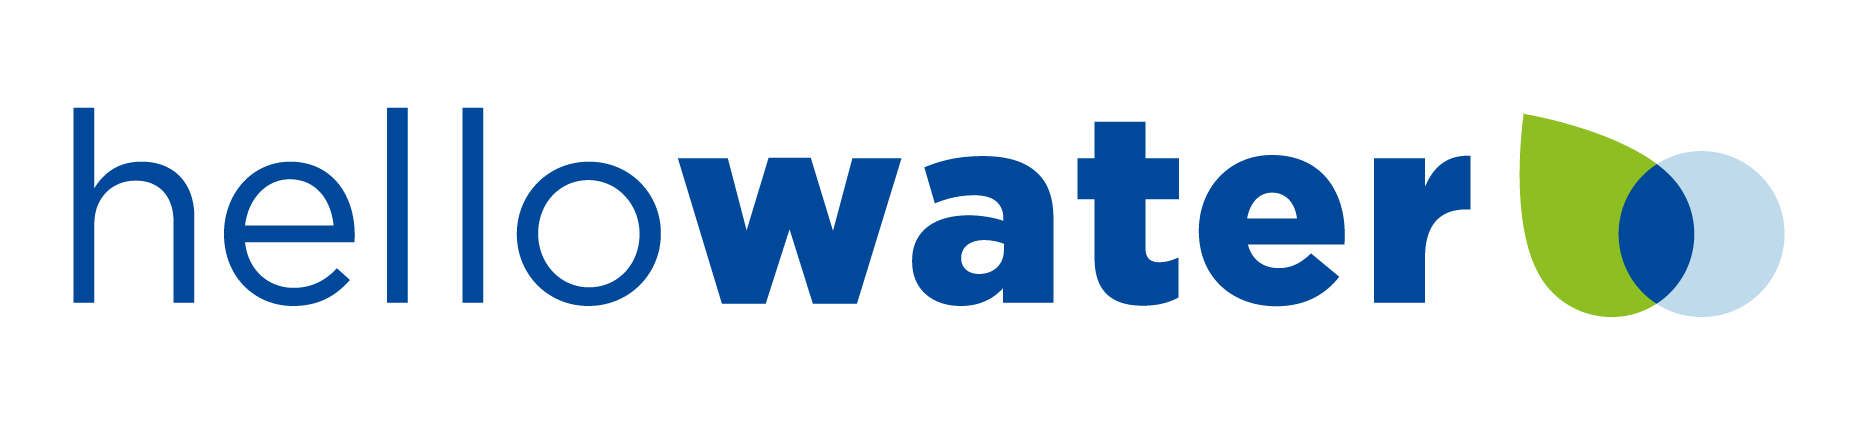 HelloWater logo